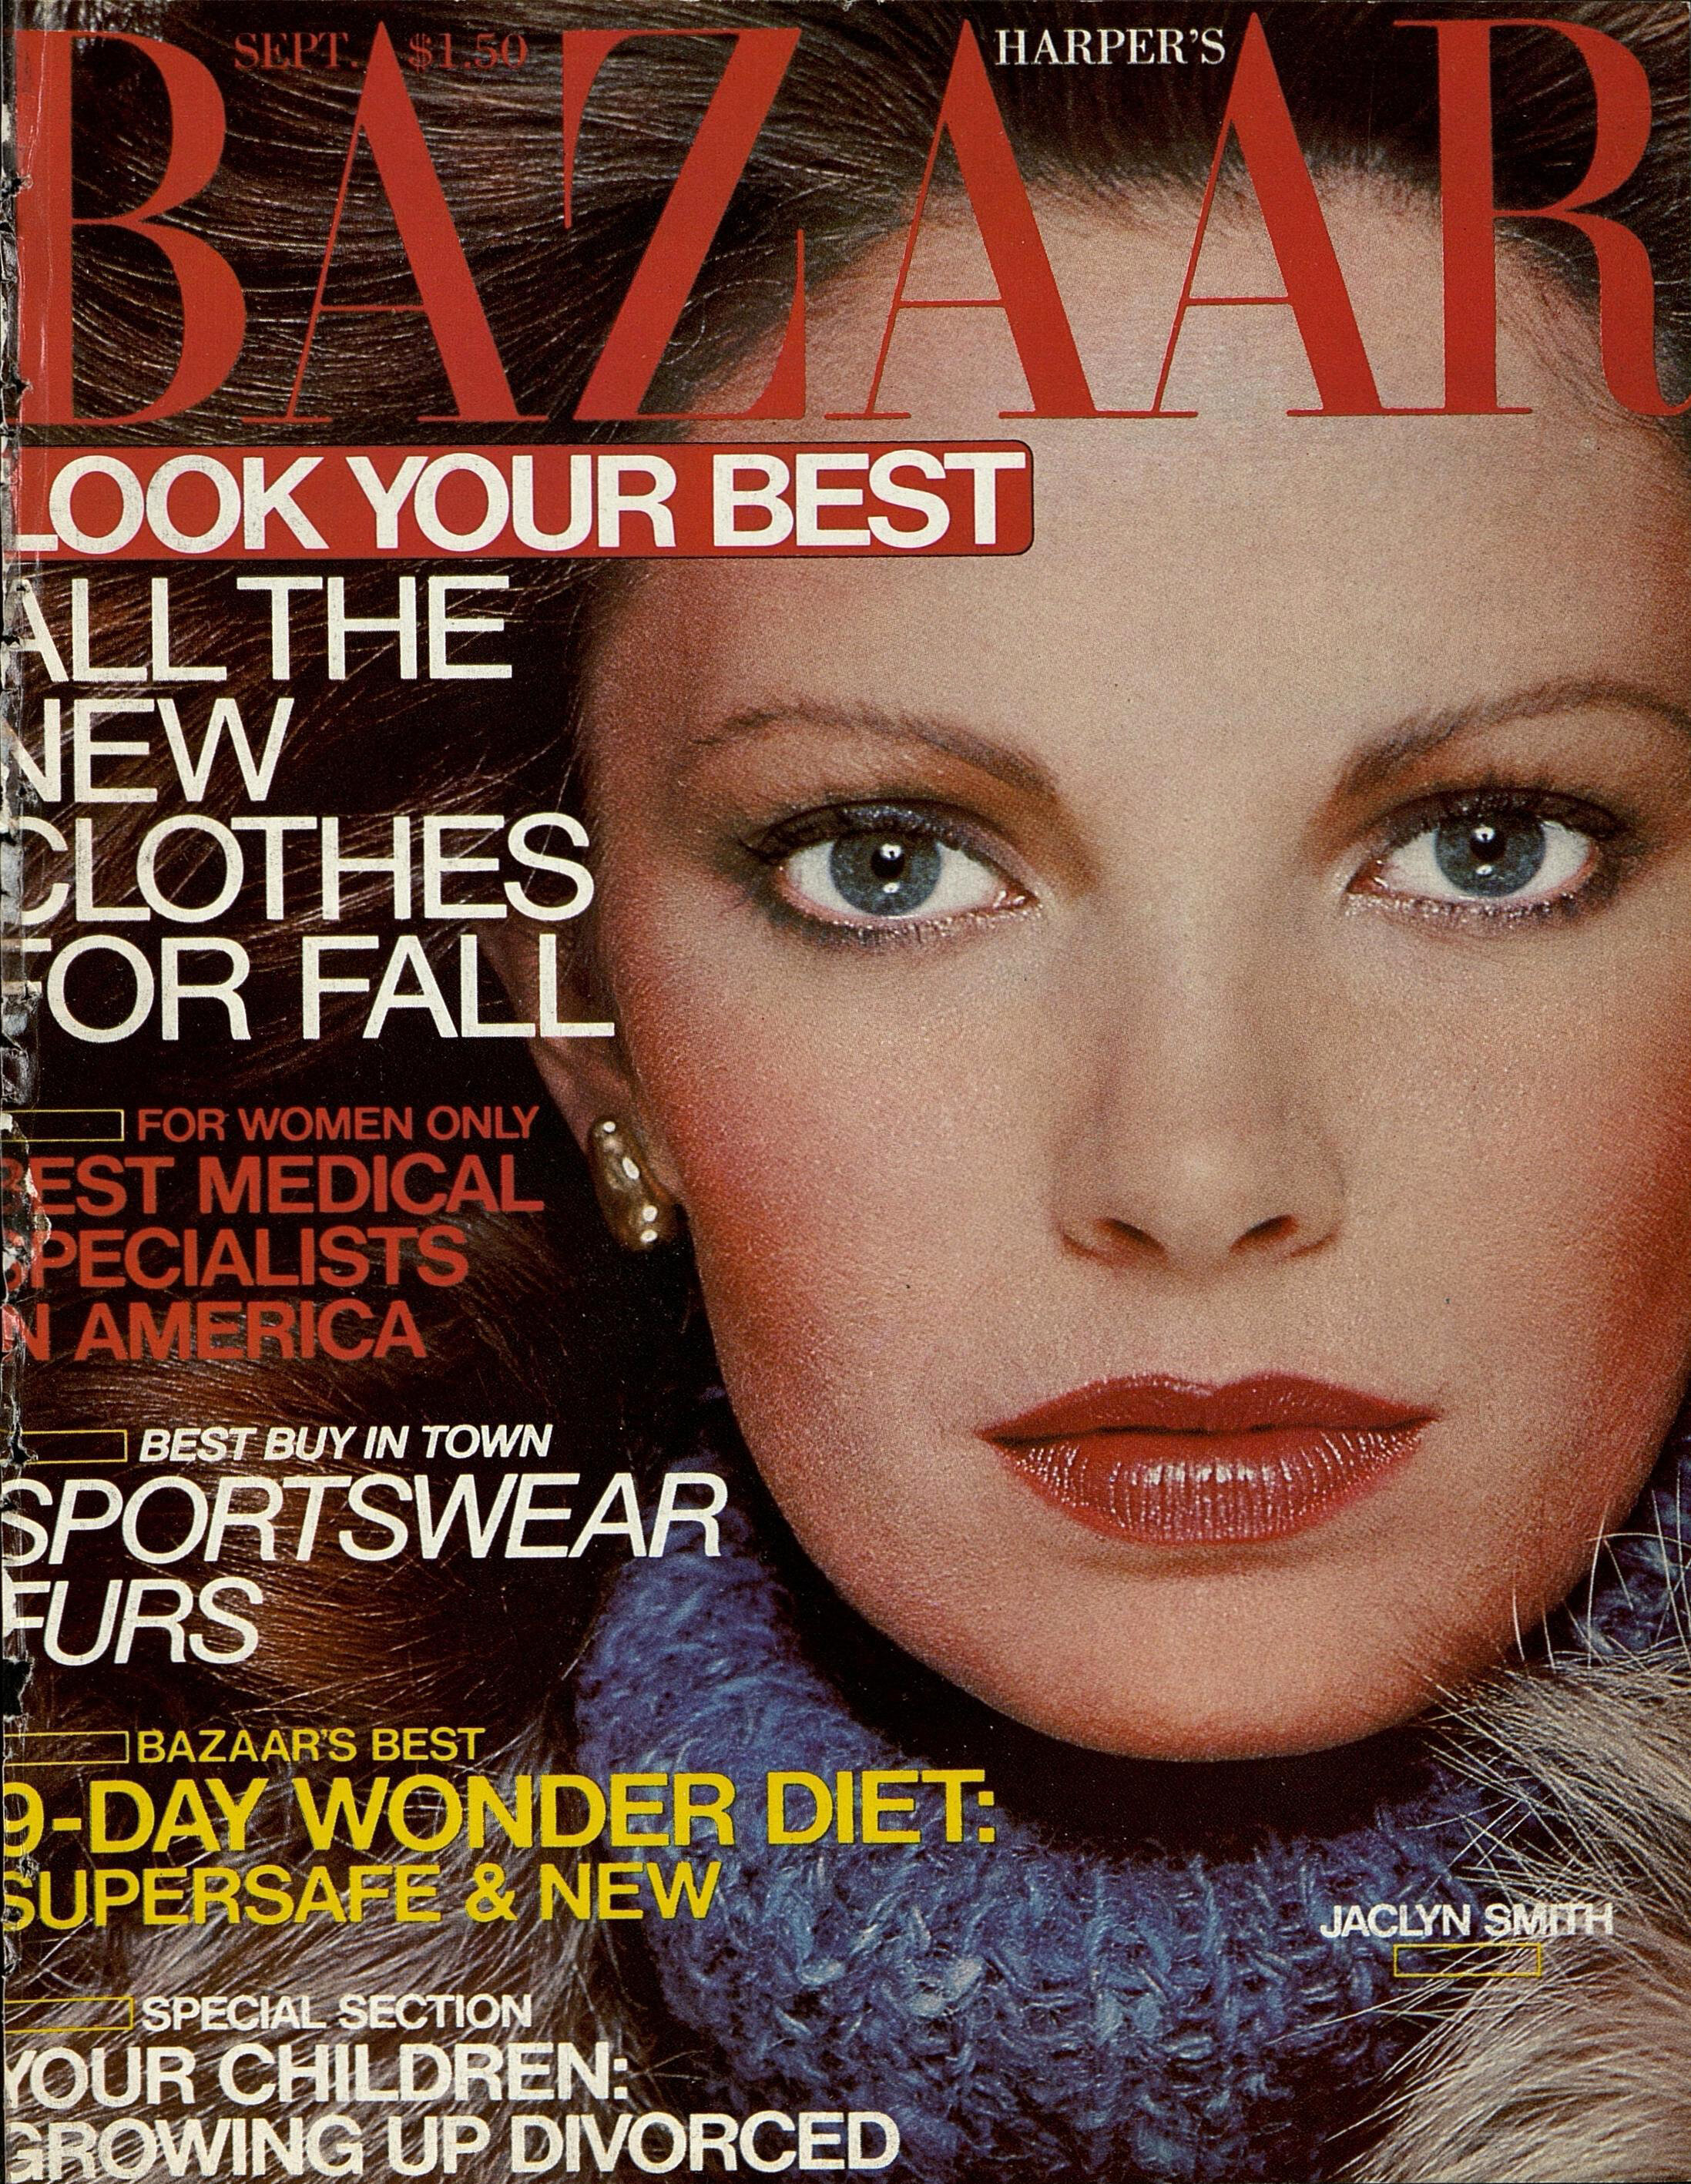 Harper's Bazaar (Sep 1978)_KING_SMITH_GILLETTE.jpg